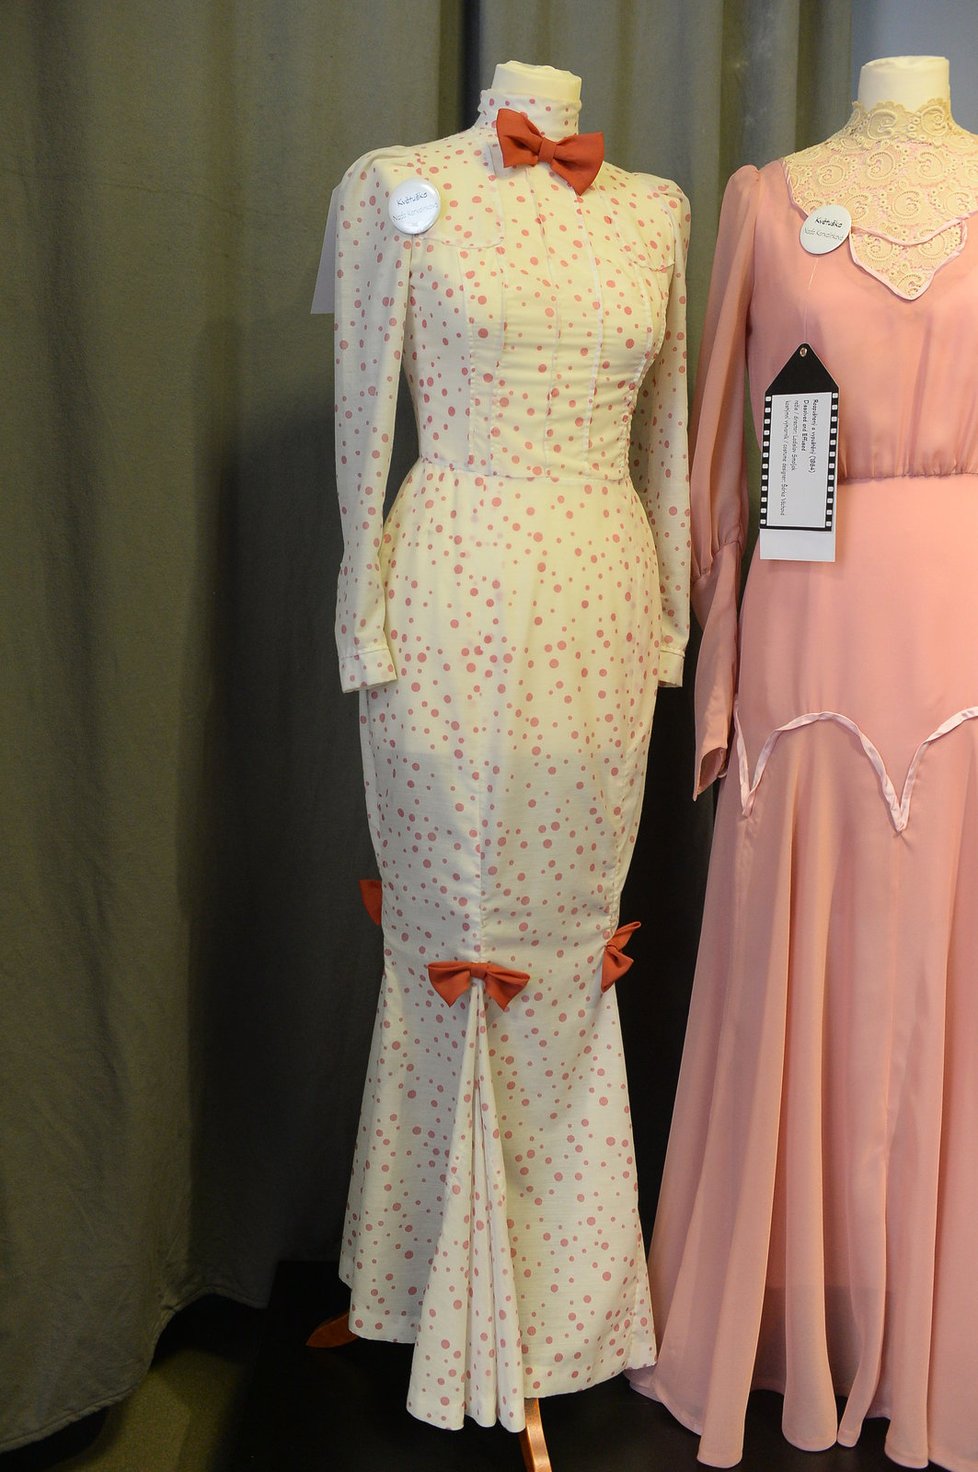 Tyto šaty Nadě Konvalinkové (65) navrhl Theodor Pištěk ml. pro komedii Adéla ještě nevečeřela...